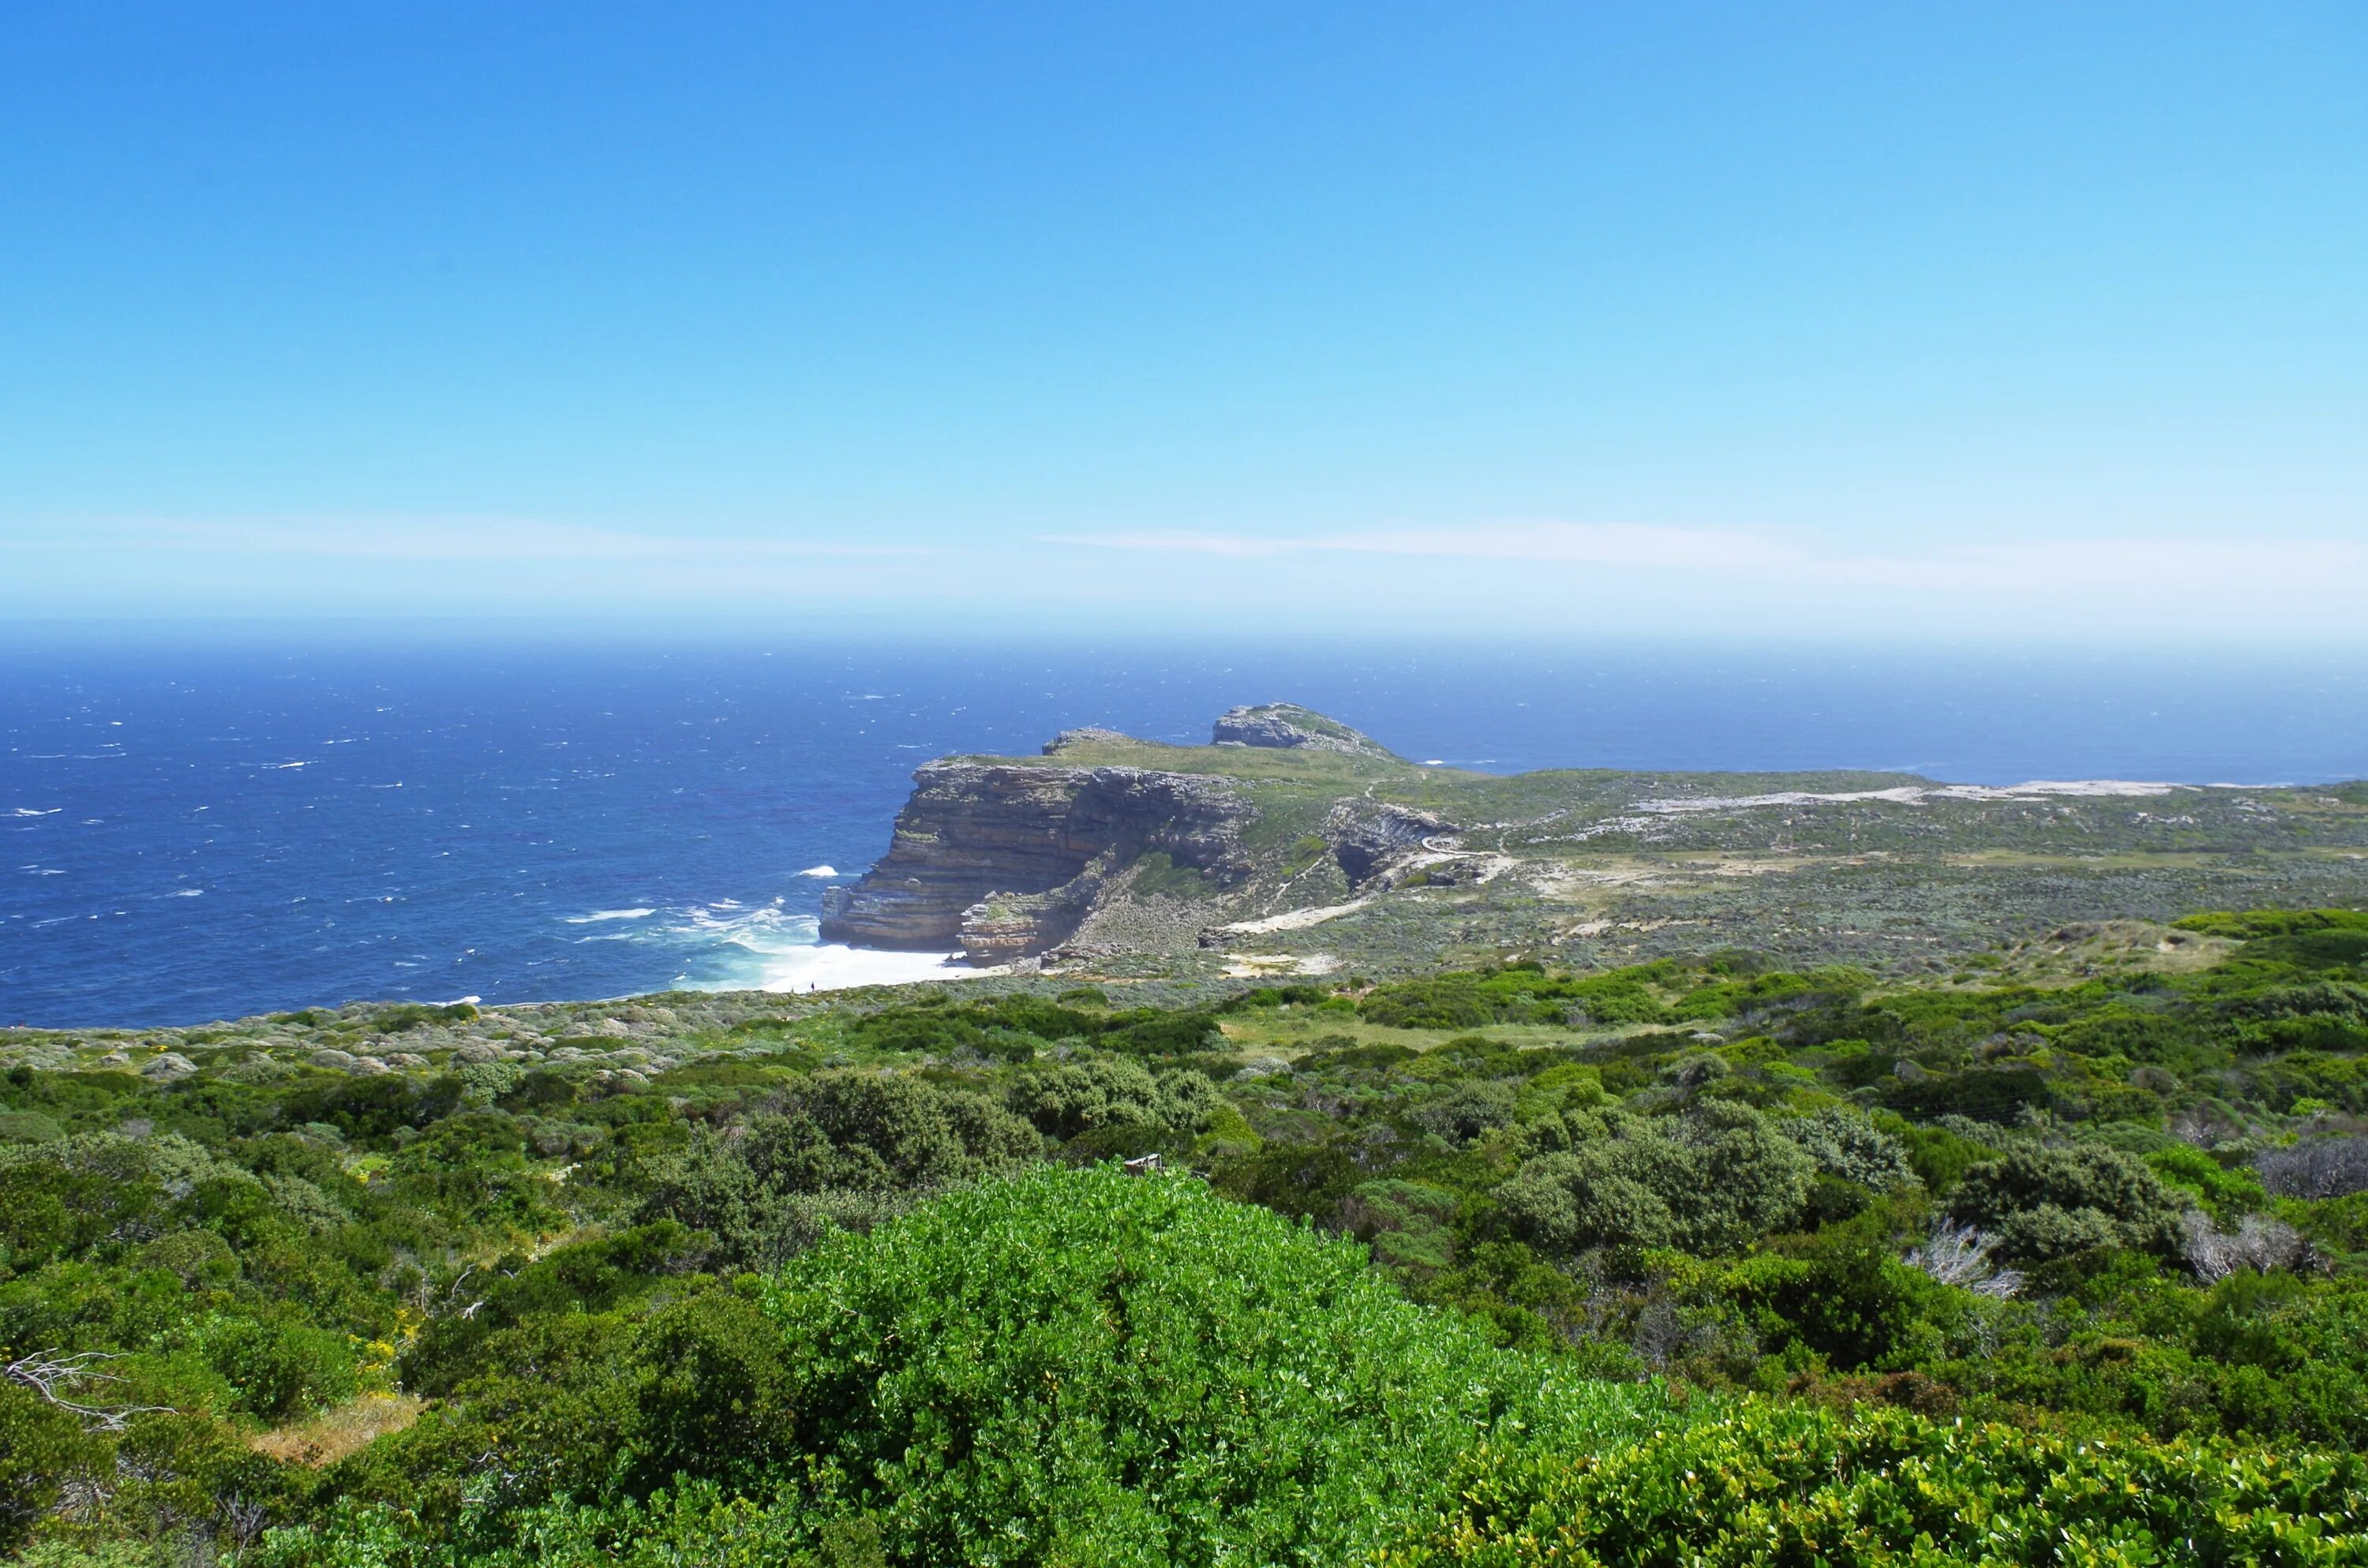 Африка береговая линия моря. Заповедник Кейп-Пойнт. Национальный парк Кейп-Пойнт, ЮАР. Мыс Саут Пойнт. Мыс Кейп.